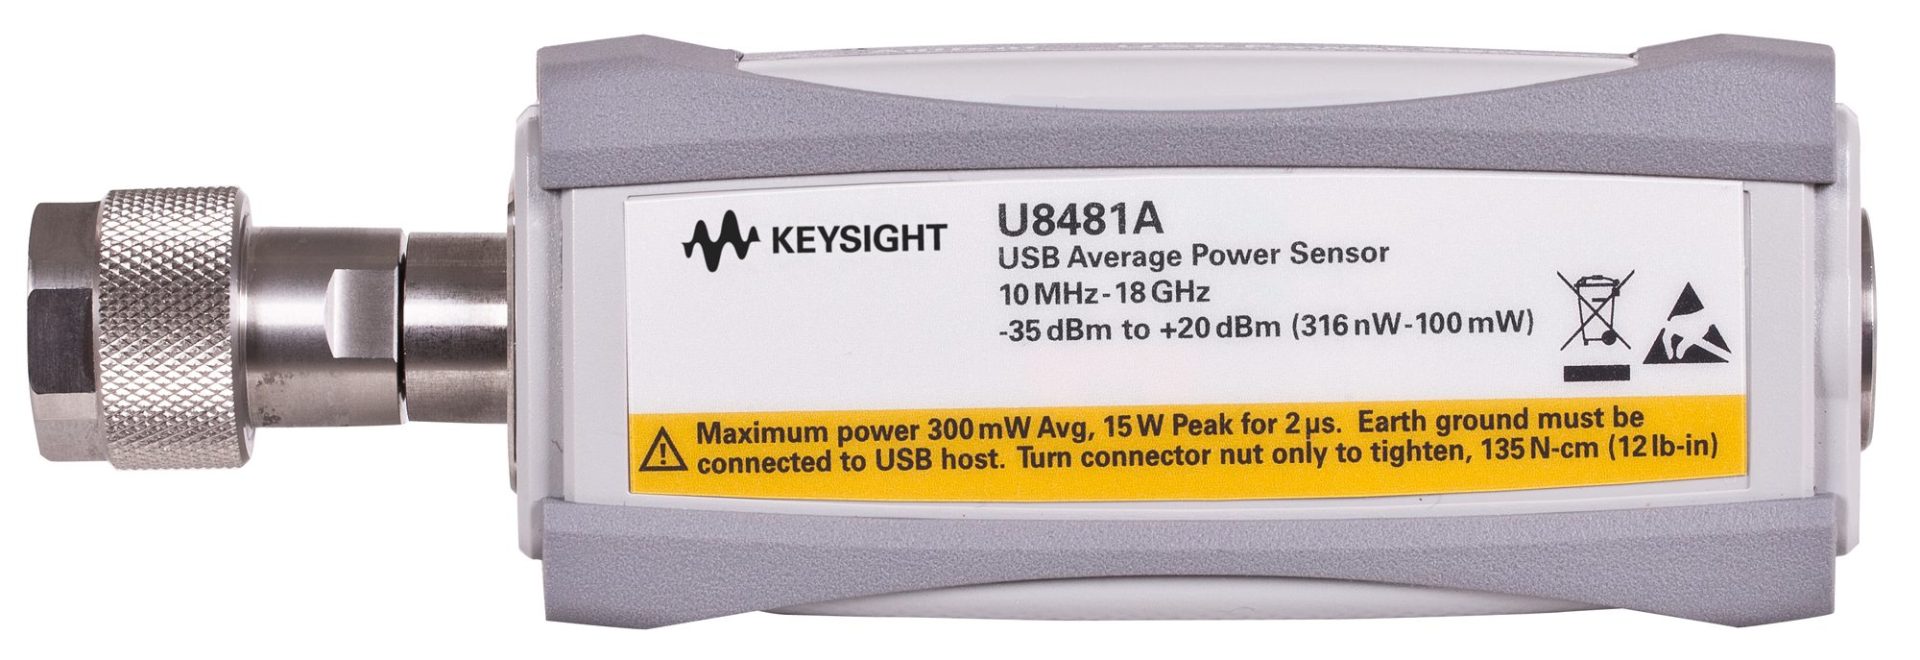 KEYSIGHT U8481A Dc TO 18 GHz USB AVERAGE POWER SENSOR 200